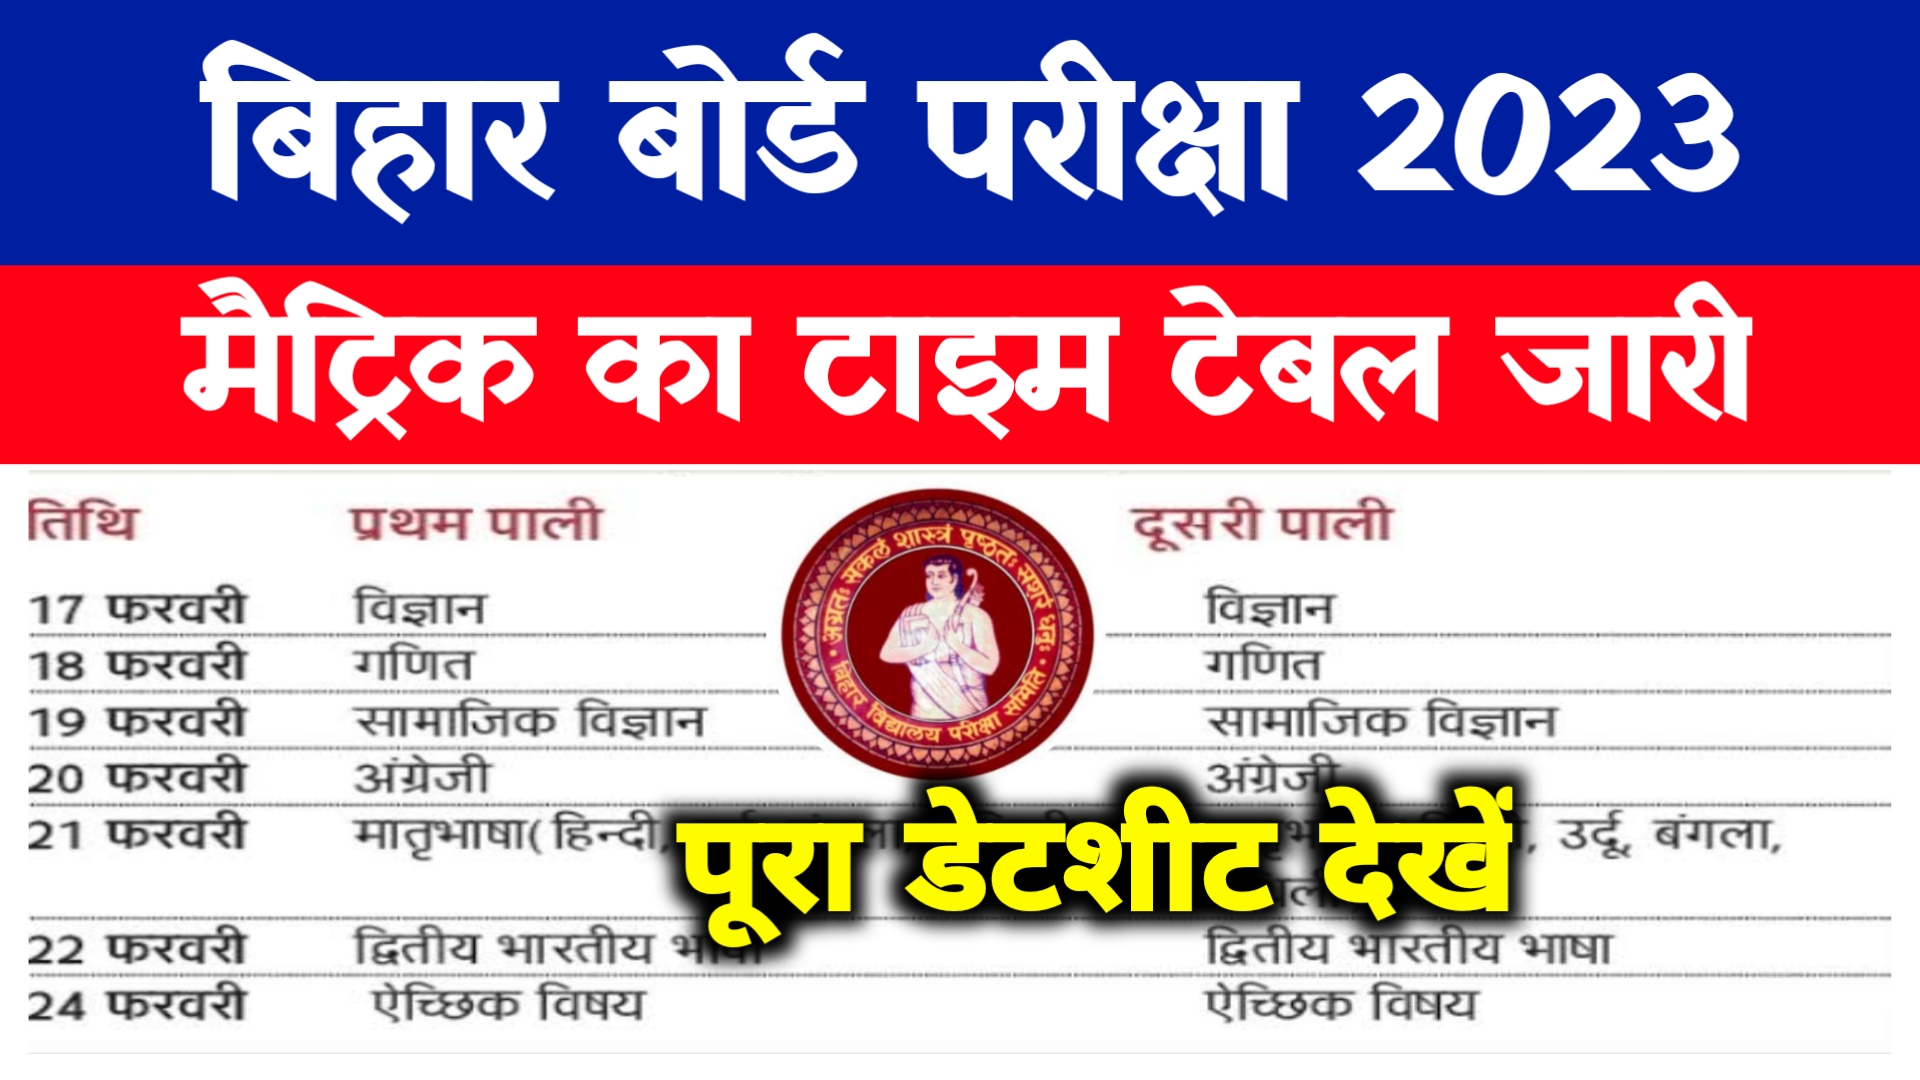 Bihar Board Matric Exam Date 2023 : मैट्रिक परीक्षा का टाइम टेबल जारी यहां देखें